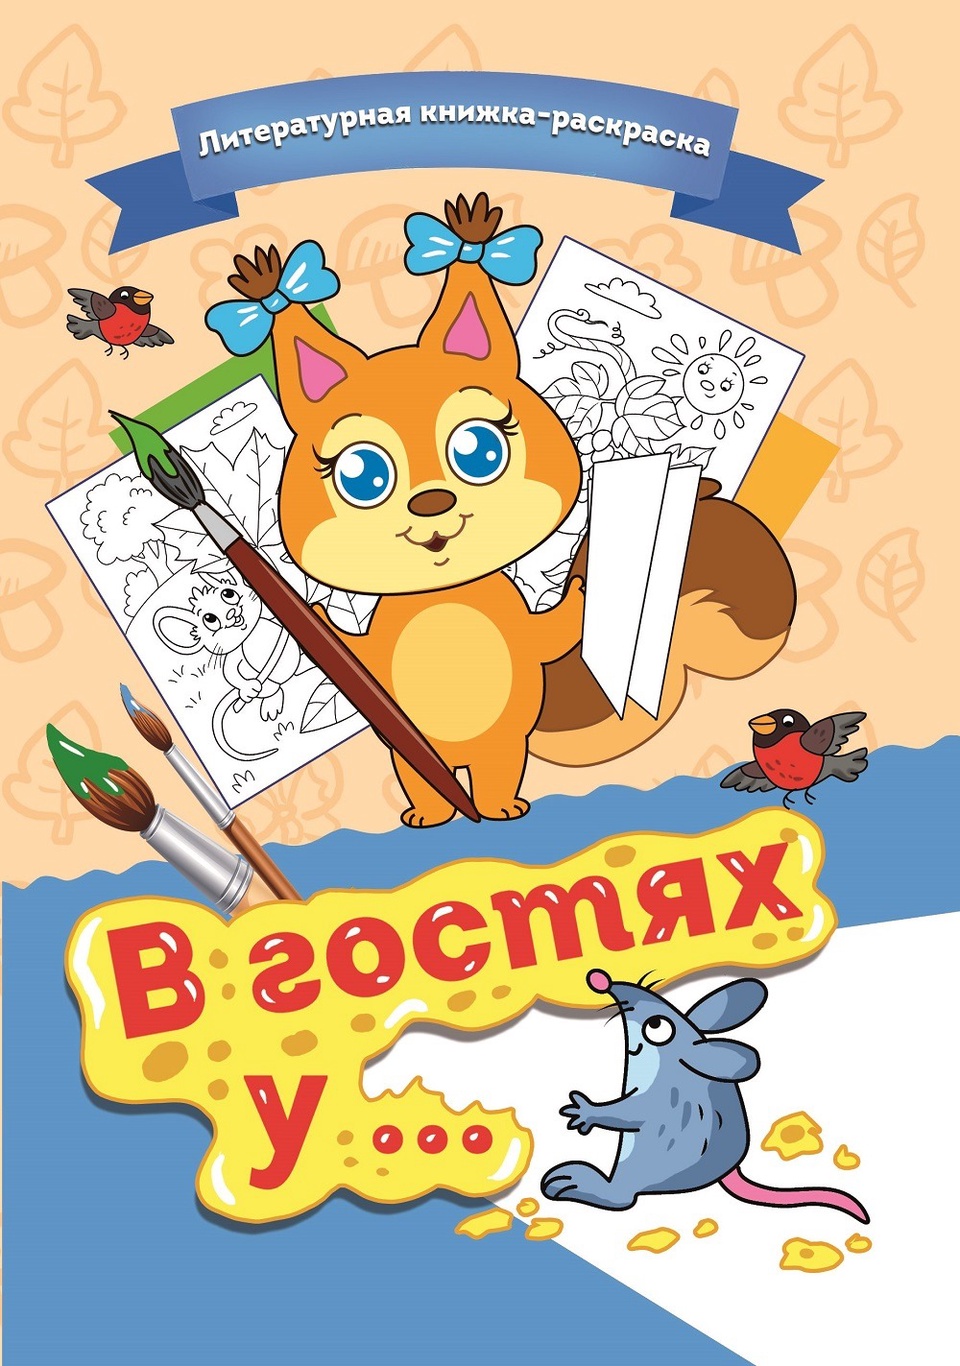 Литературная книжка-раскраска «В гостях у …» - 250 ₽, заказать онлайн.